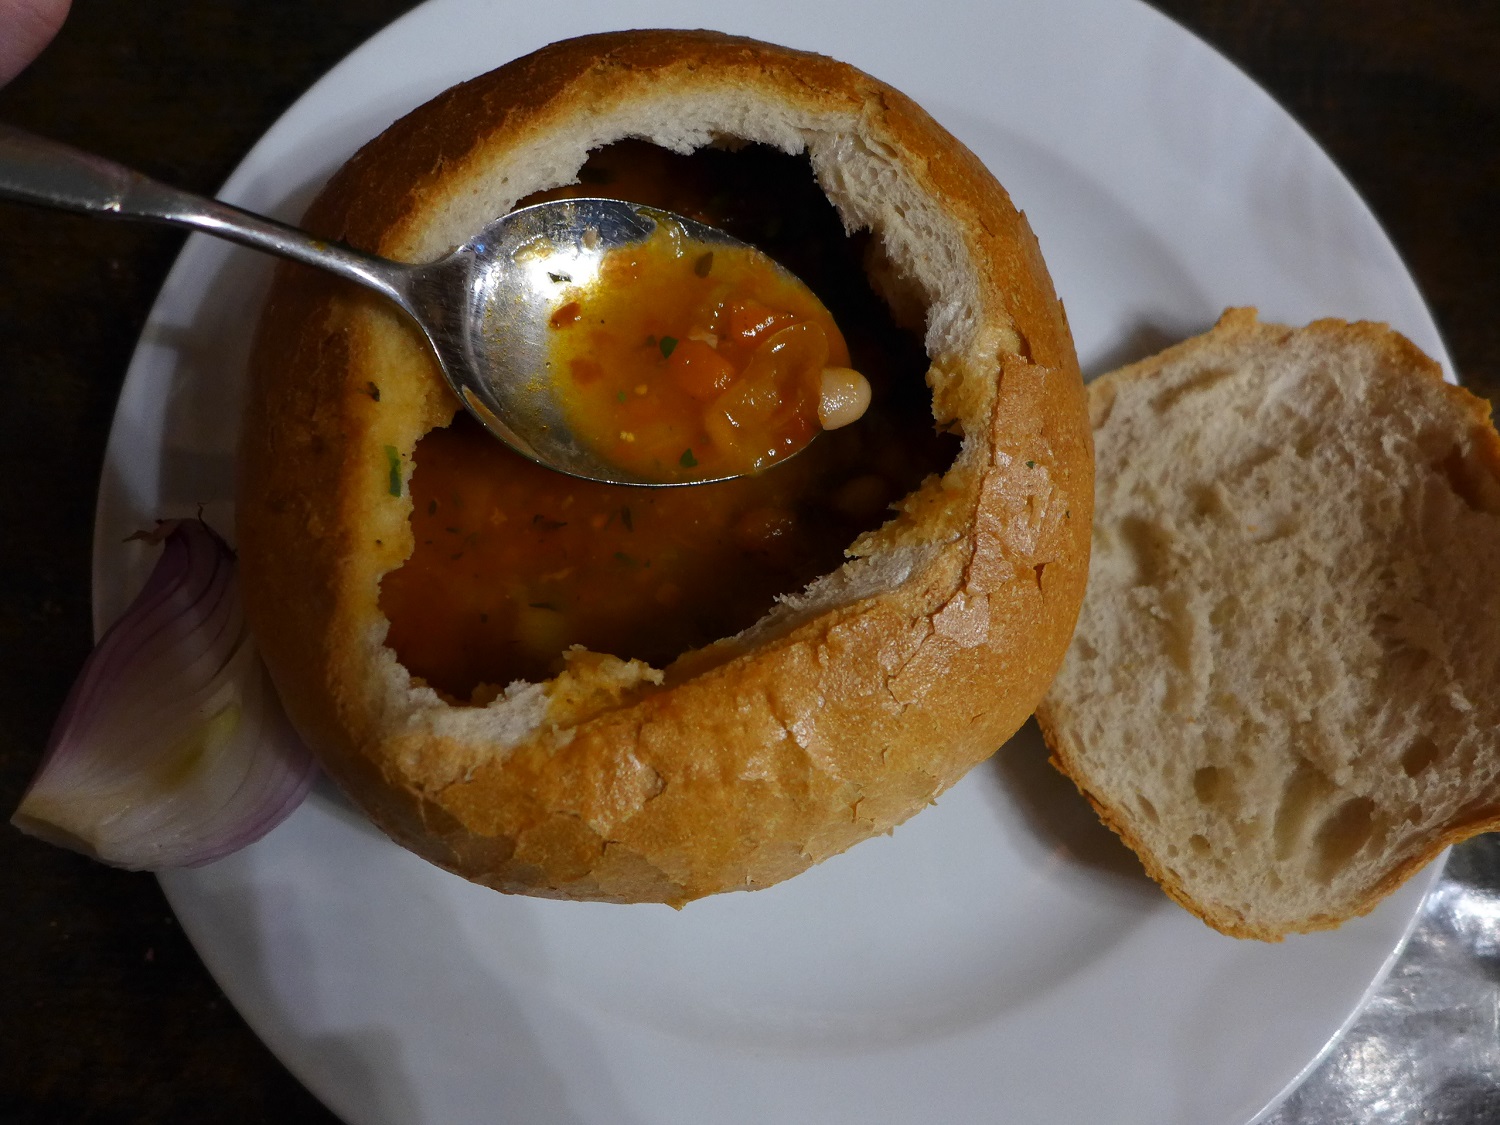 Ciorba de fasole : soupe de haricots blancs, servie dans une miche de pain creuse !